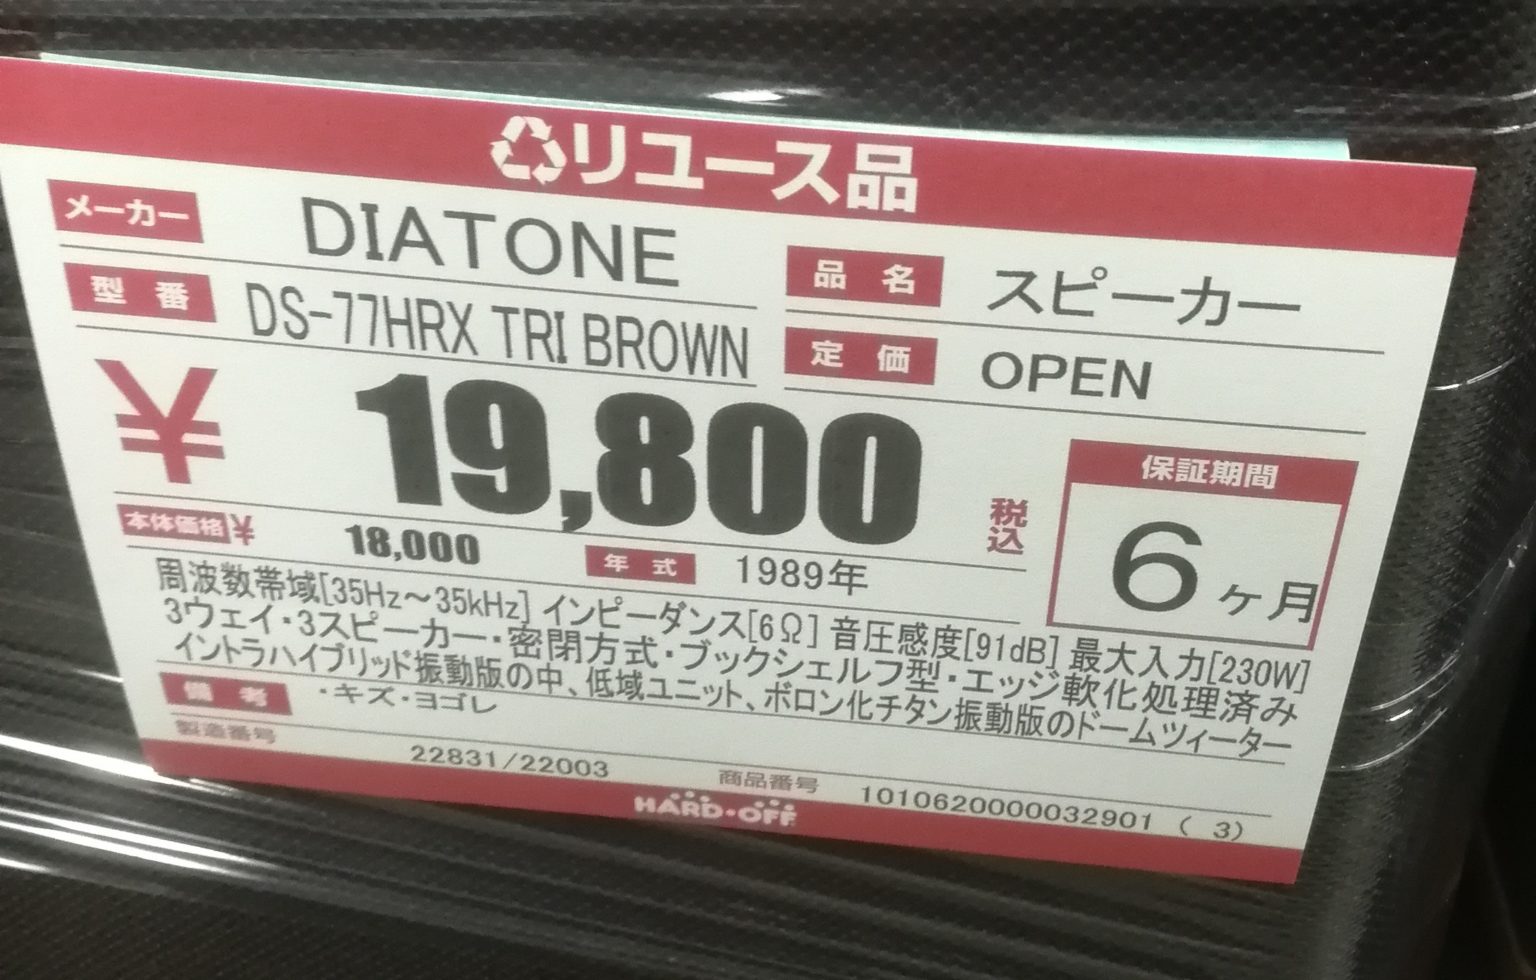 赤帽、引取限定)札幌市 DS 77HR diatone スピーカー+keerthiraj.com